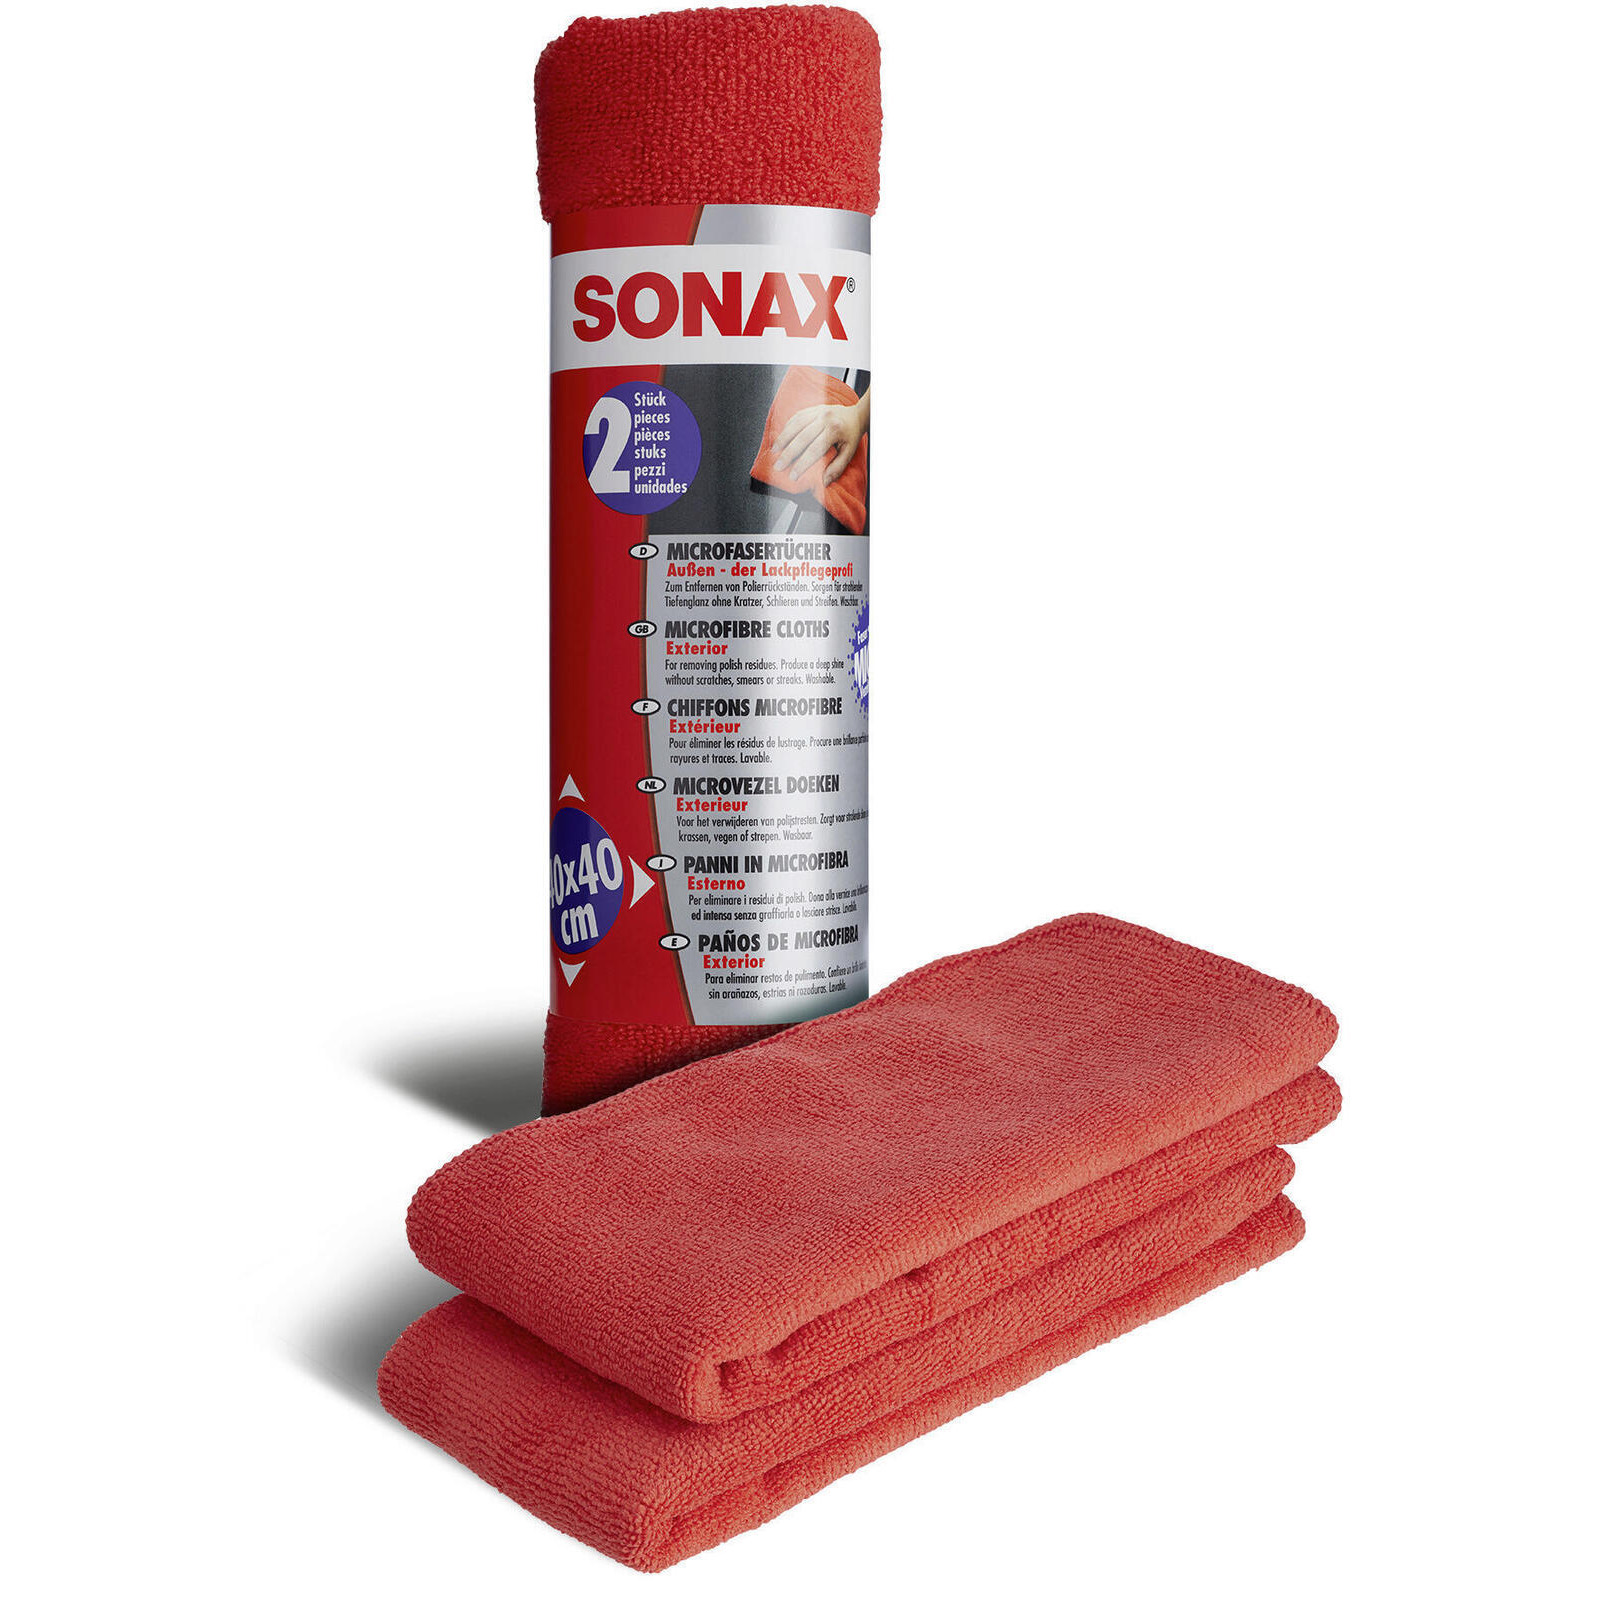 SONAX MicrofaserTücher Außen (2 St.)